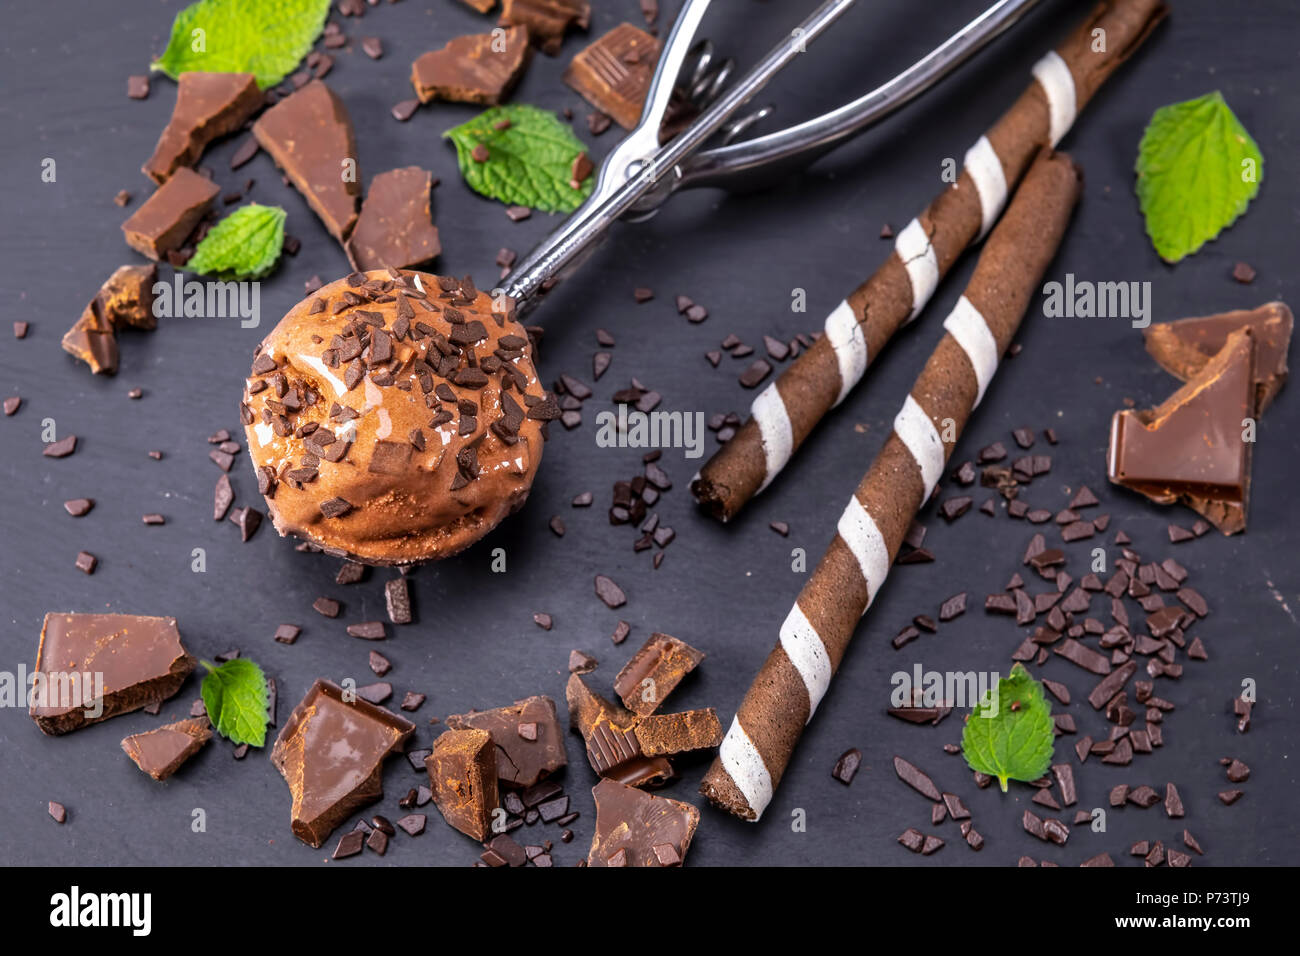 Helado de chocolate en boca con palos y obleas de chocolate sobre una placa de pizarra negra. Se centran en el helado en la boca. Foto de stock